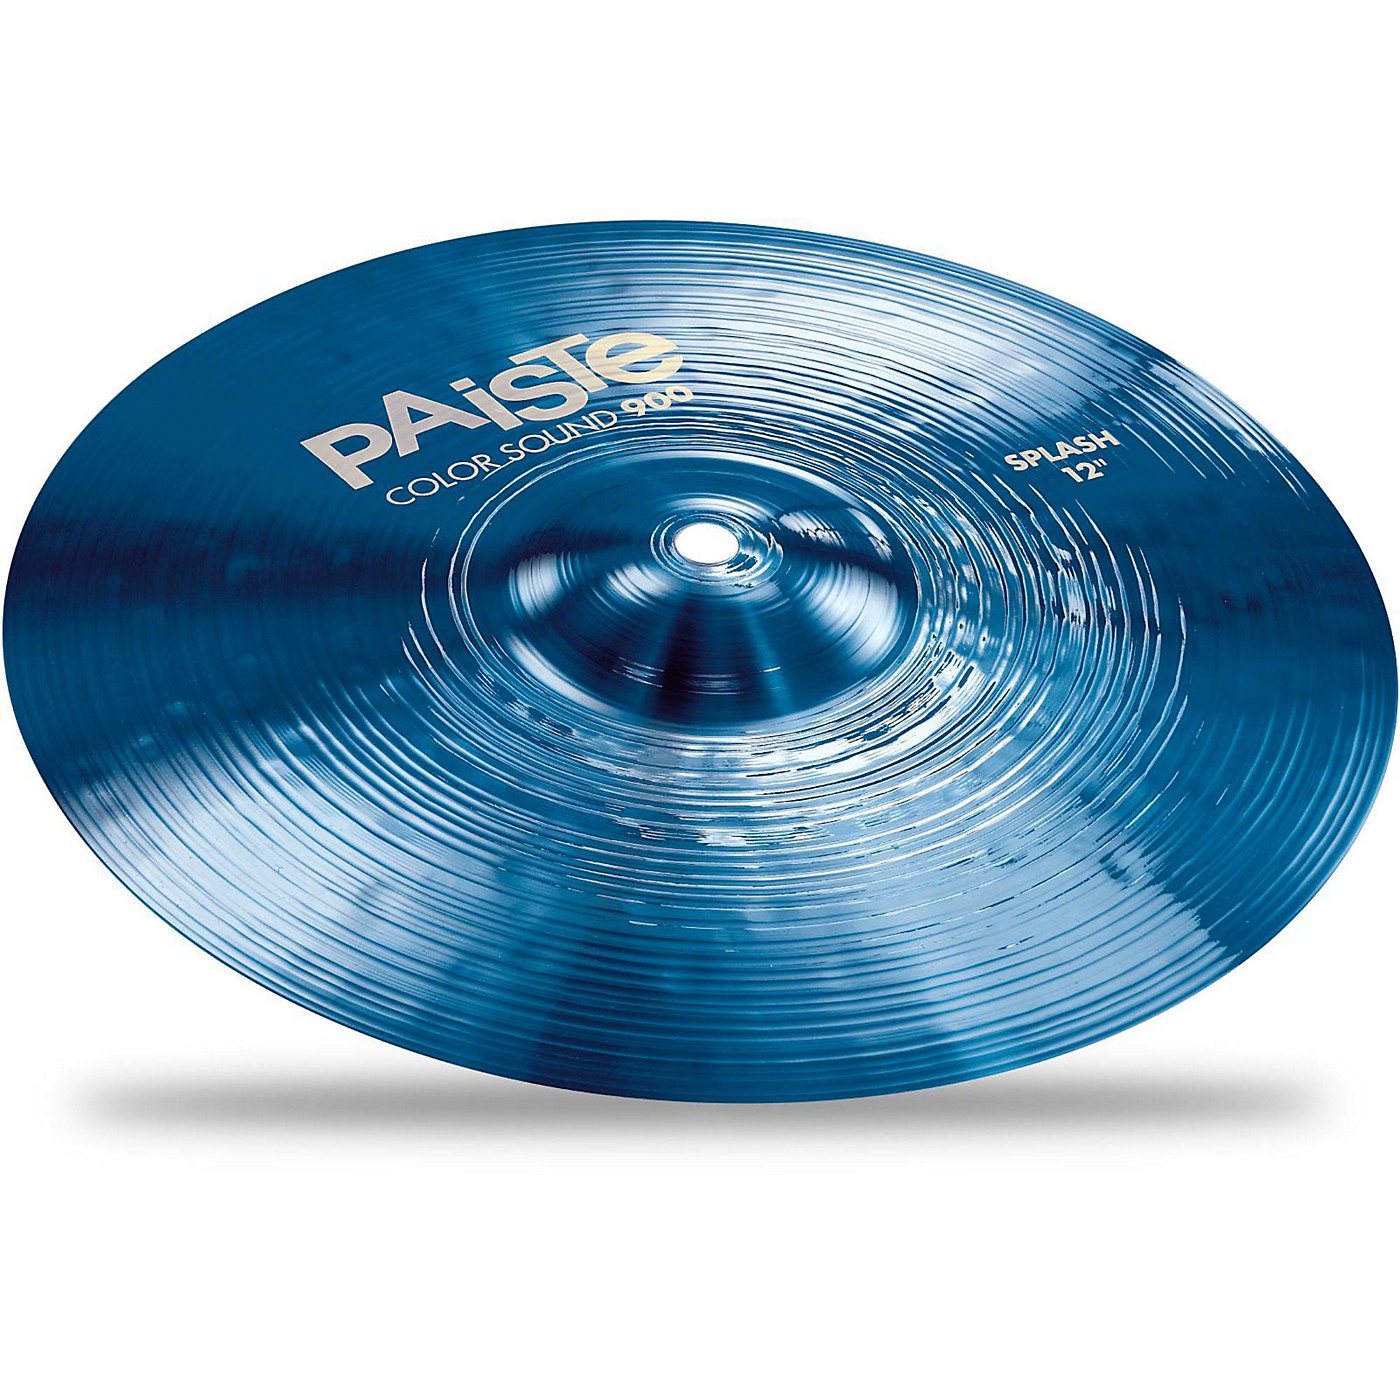 Paiste Colorsound 900 Splash Cymbal Blue thumbnail